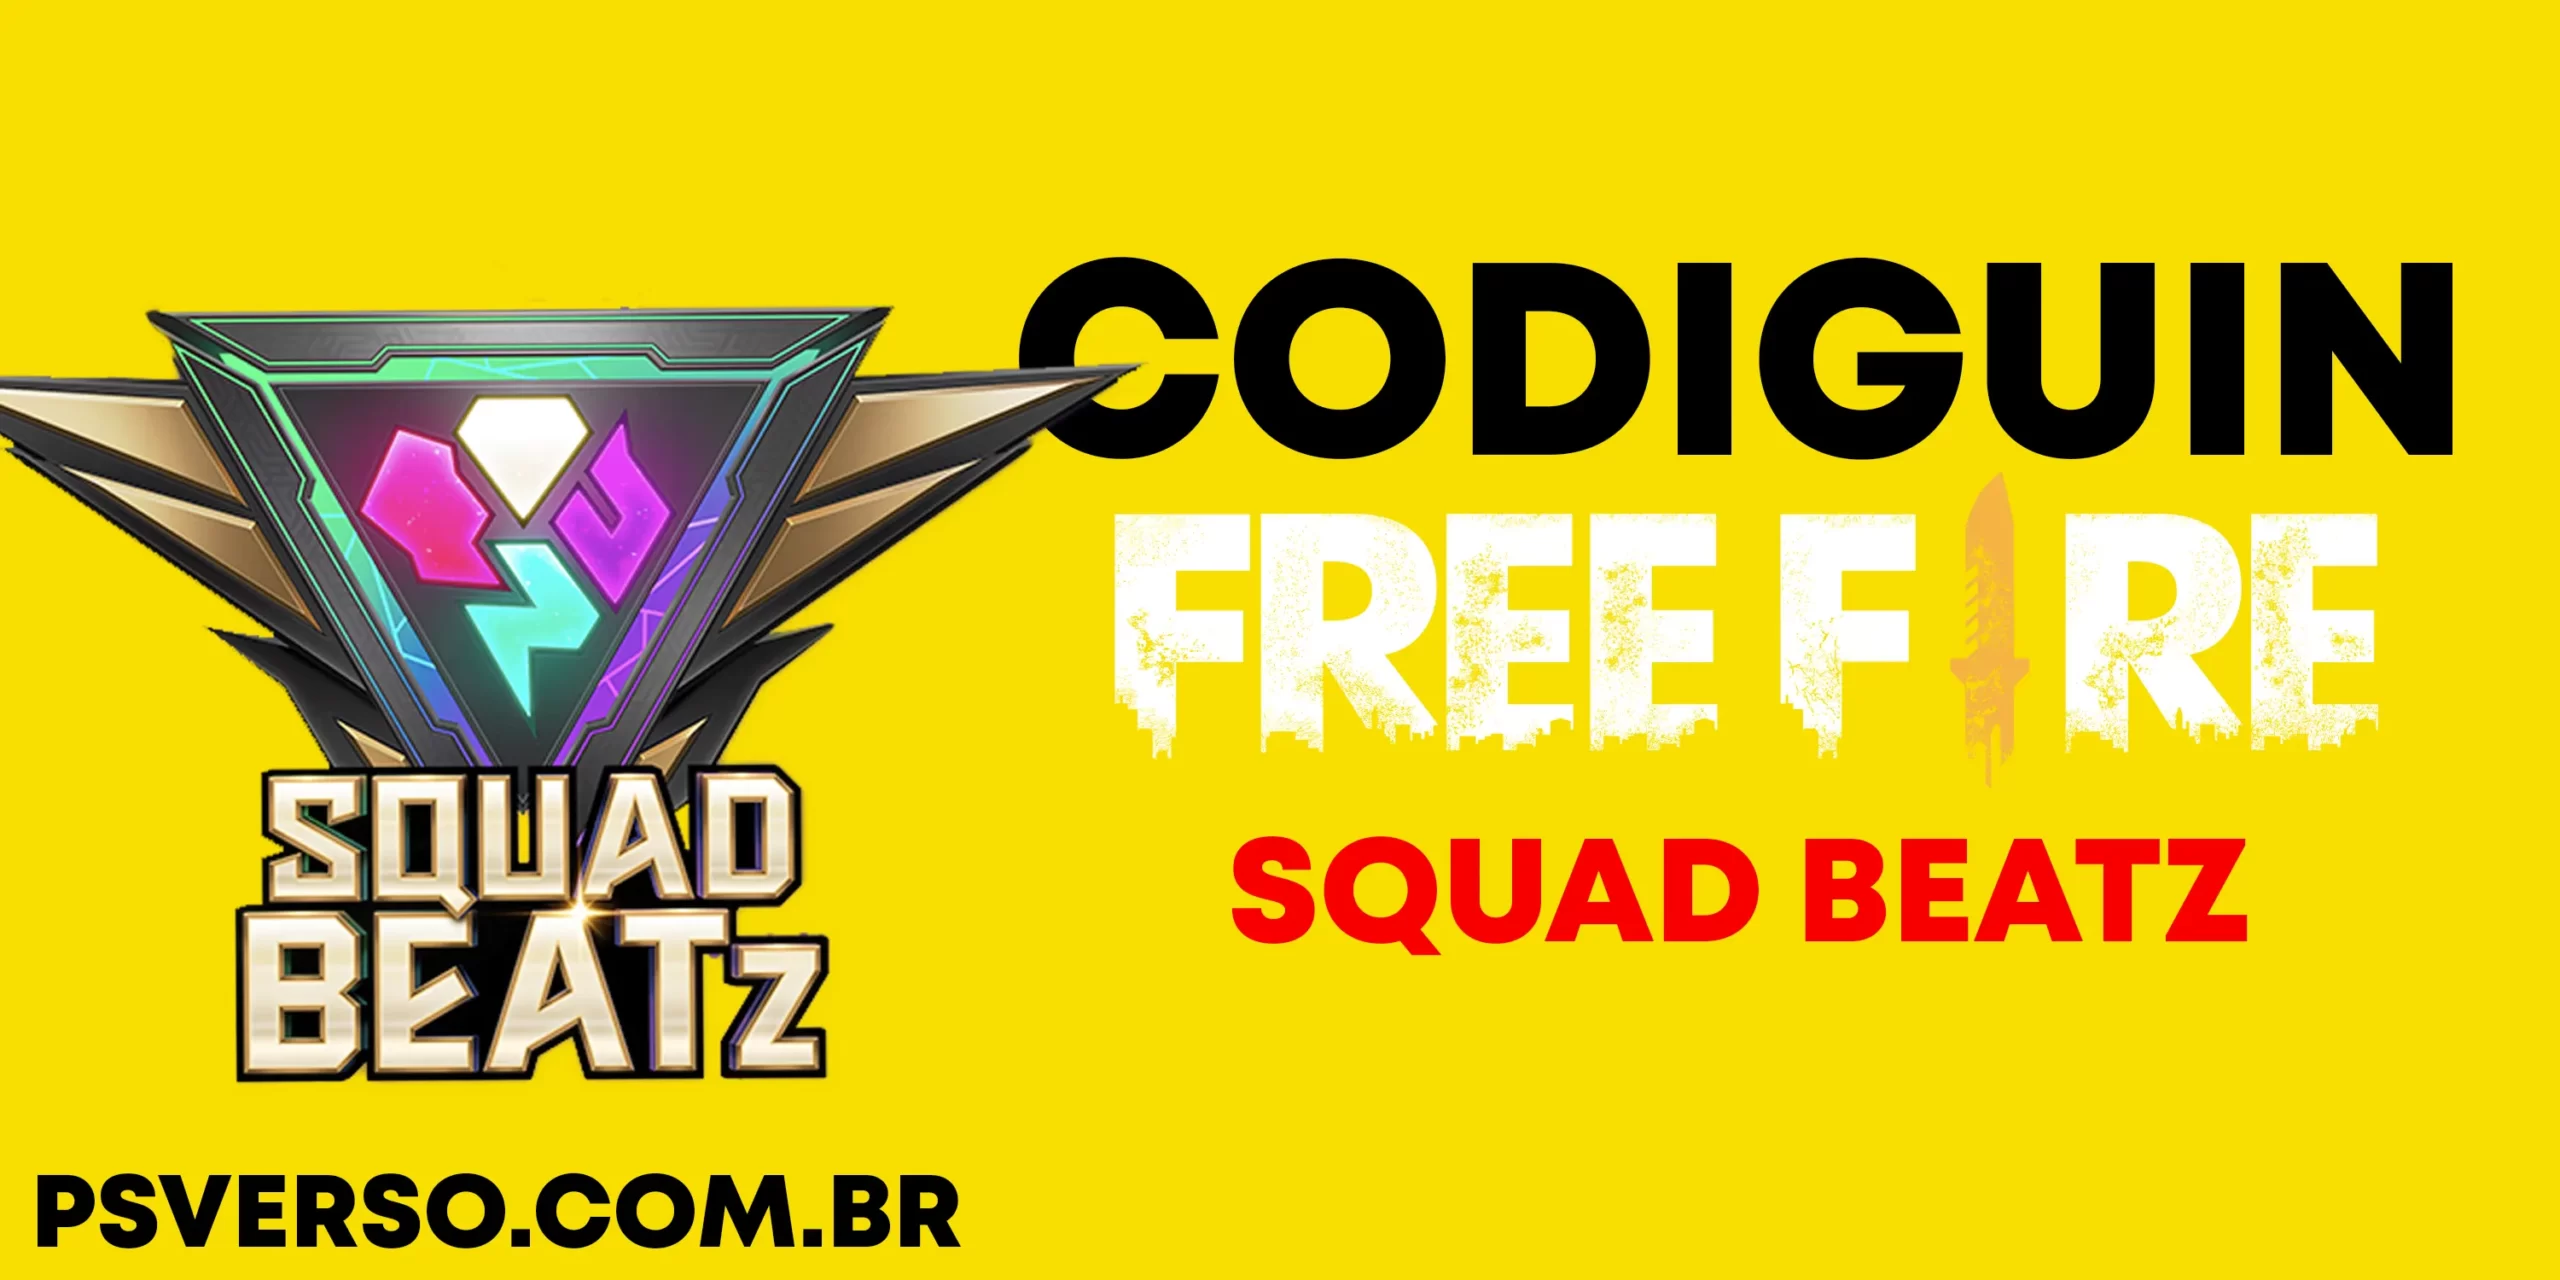 Códigos Free Fire: CODIGUIN FF skins Squad Beatz grátis